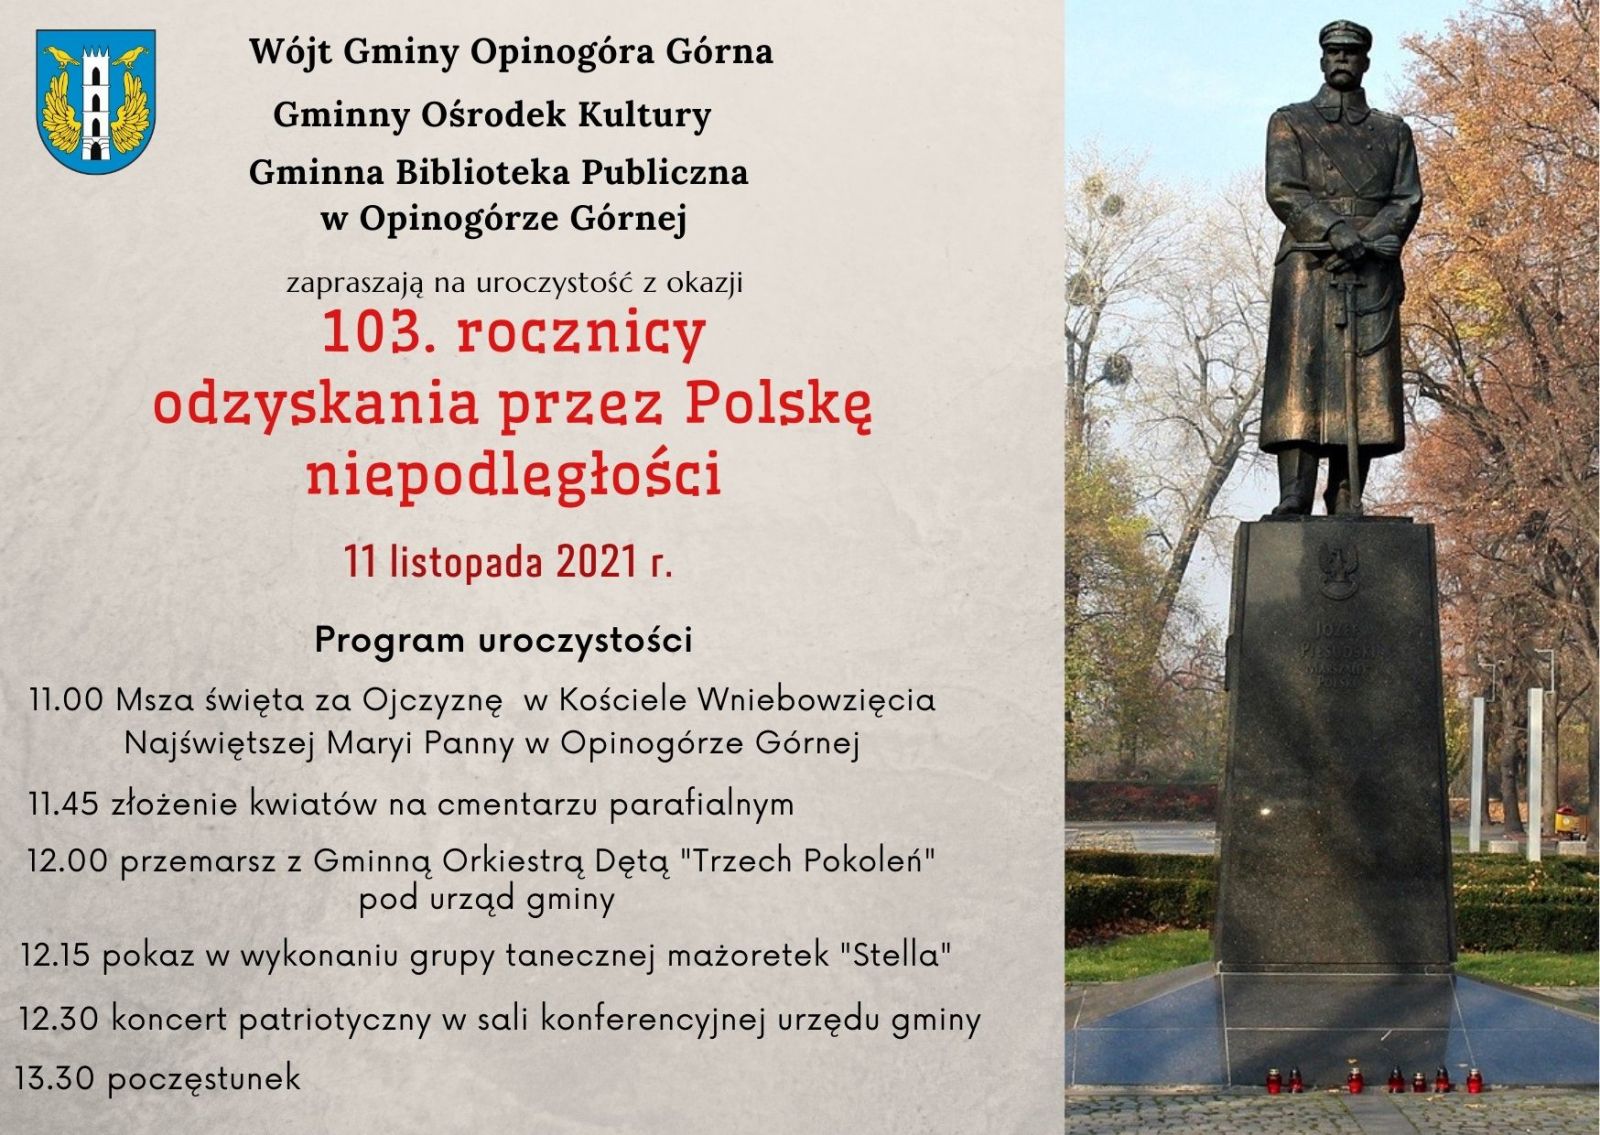 Zdjęcie plakatu informującego o obchodach 103. rocznicy odzyskania przez Polskę niepodległości w Opinogórze Górnej.